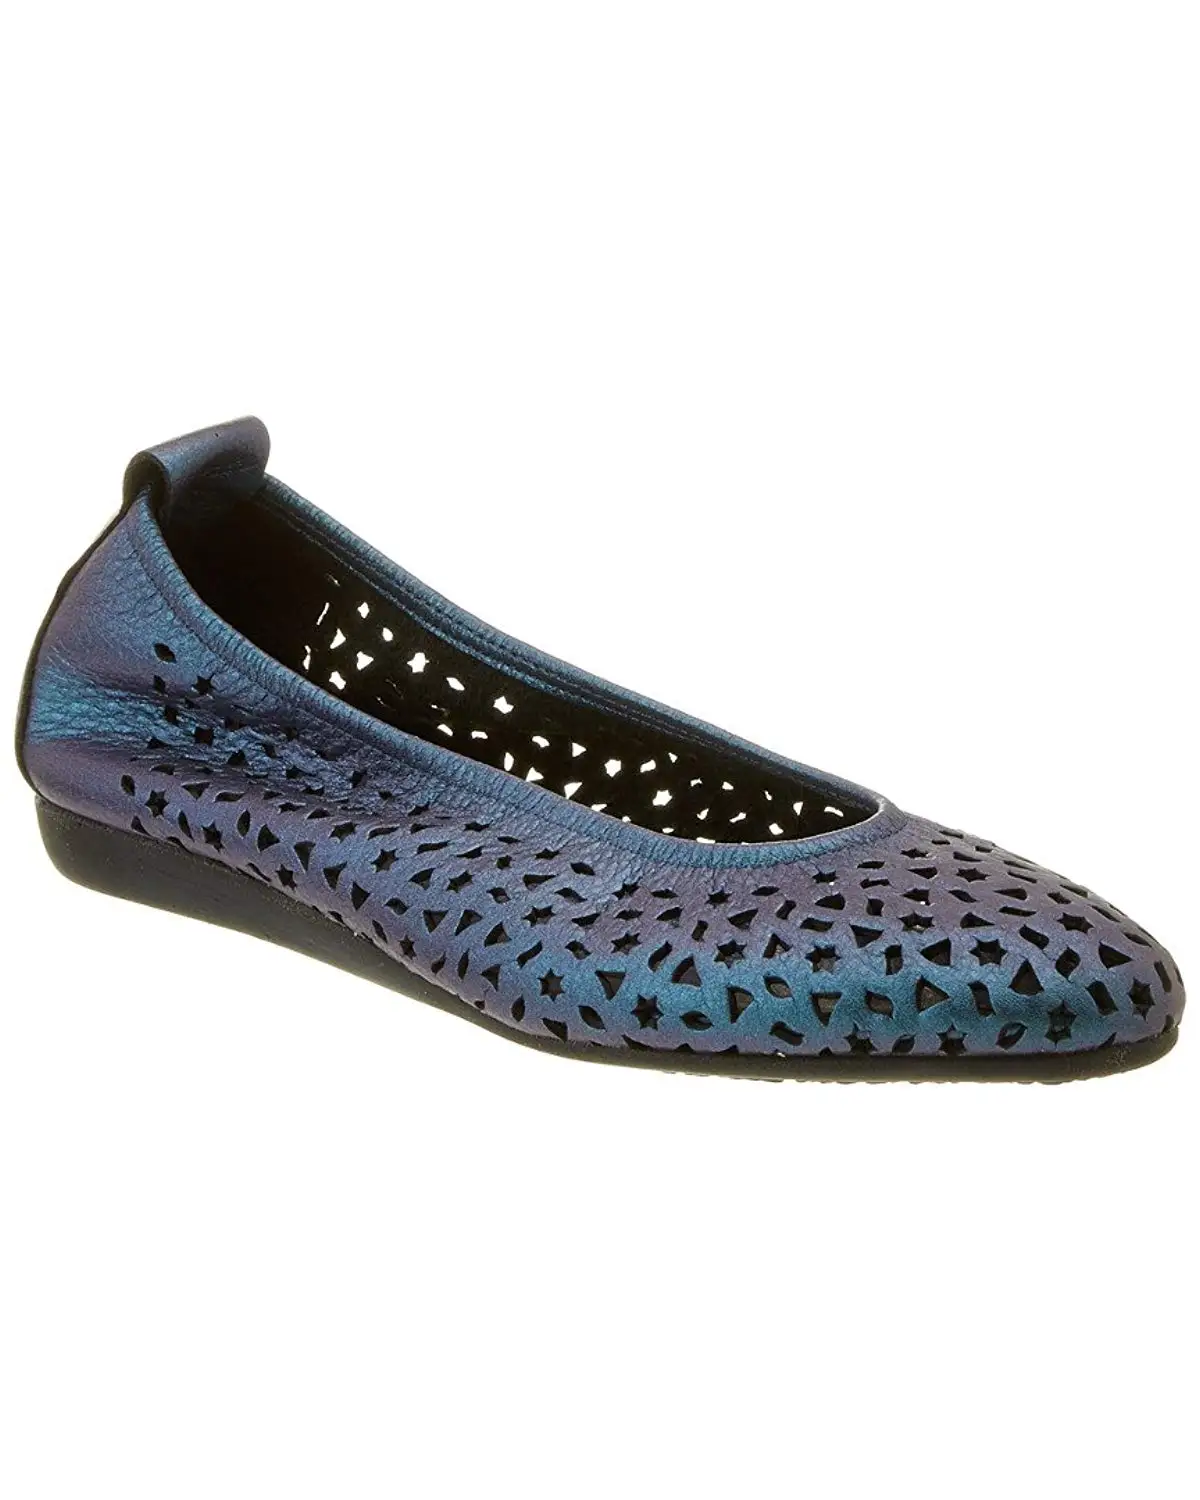 arche shoes online